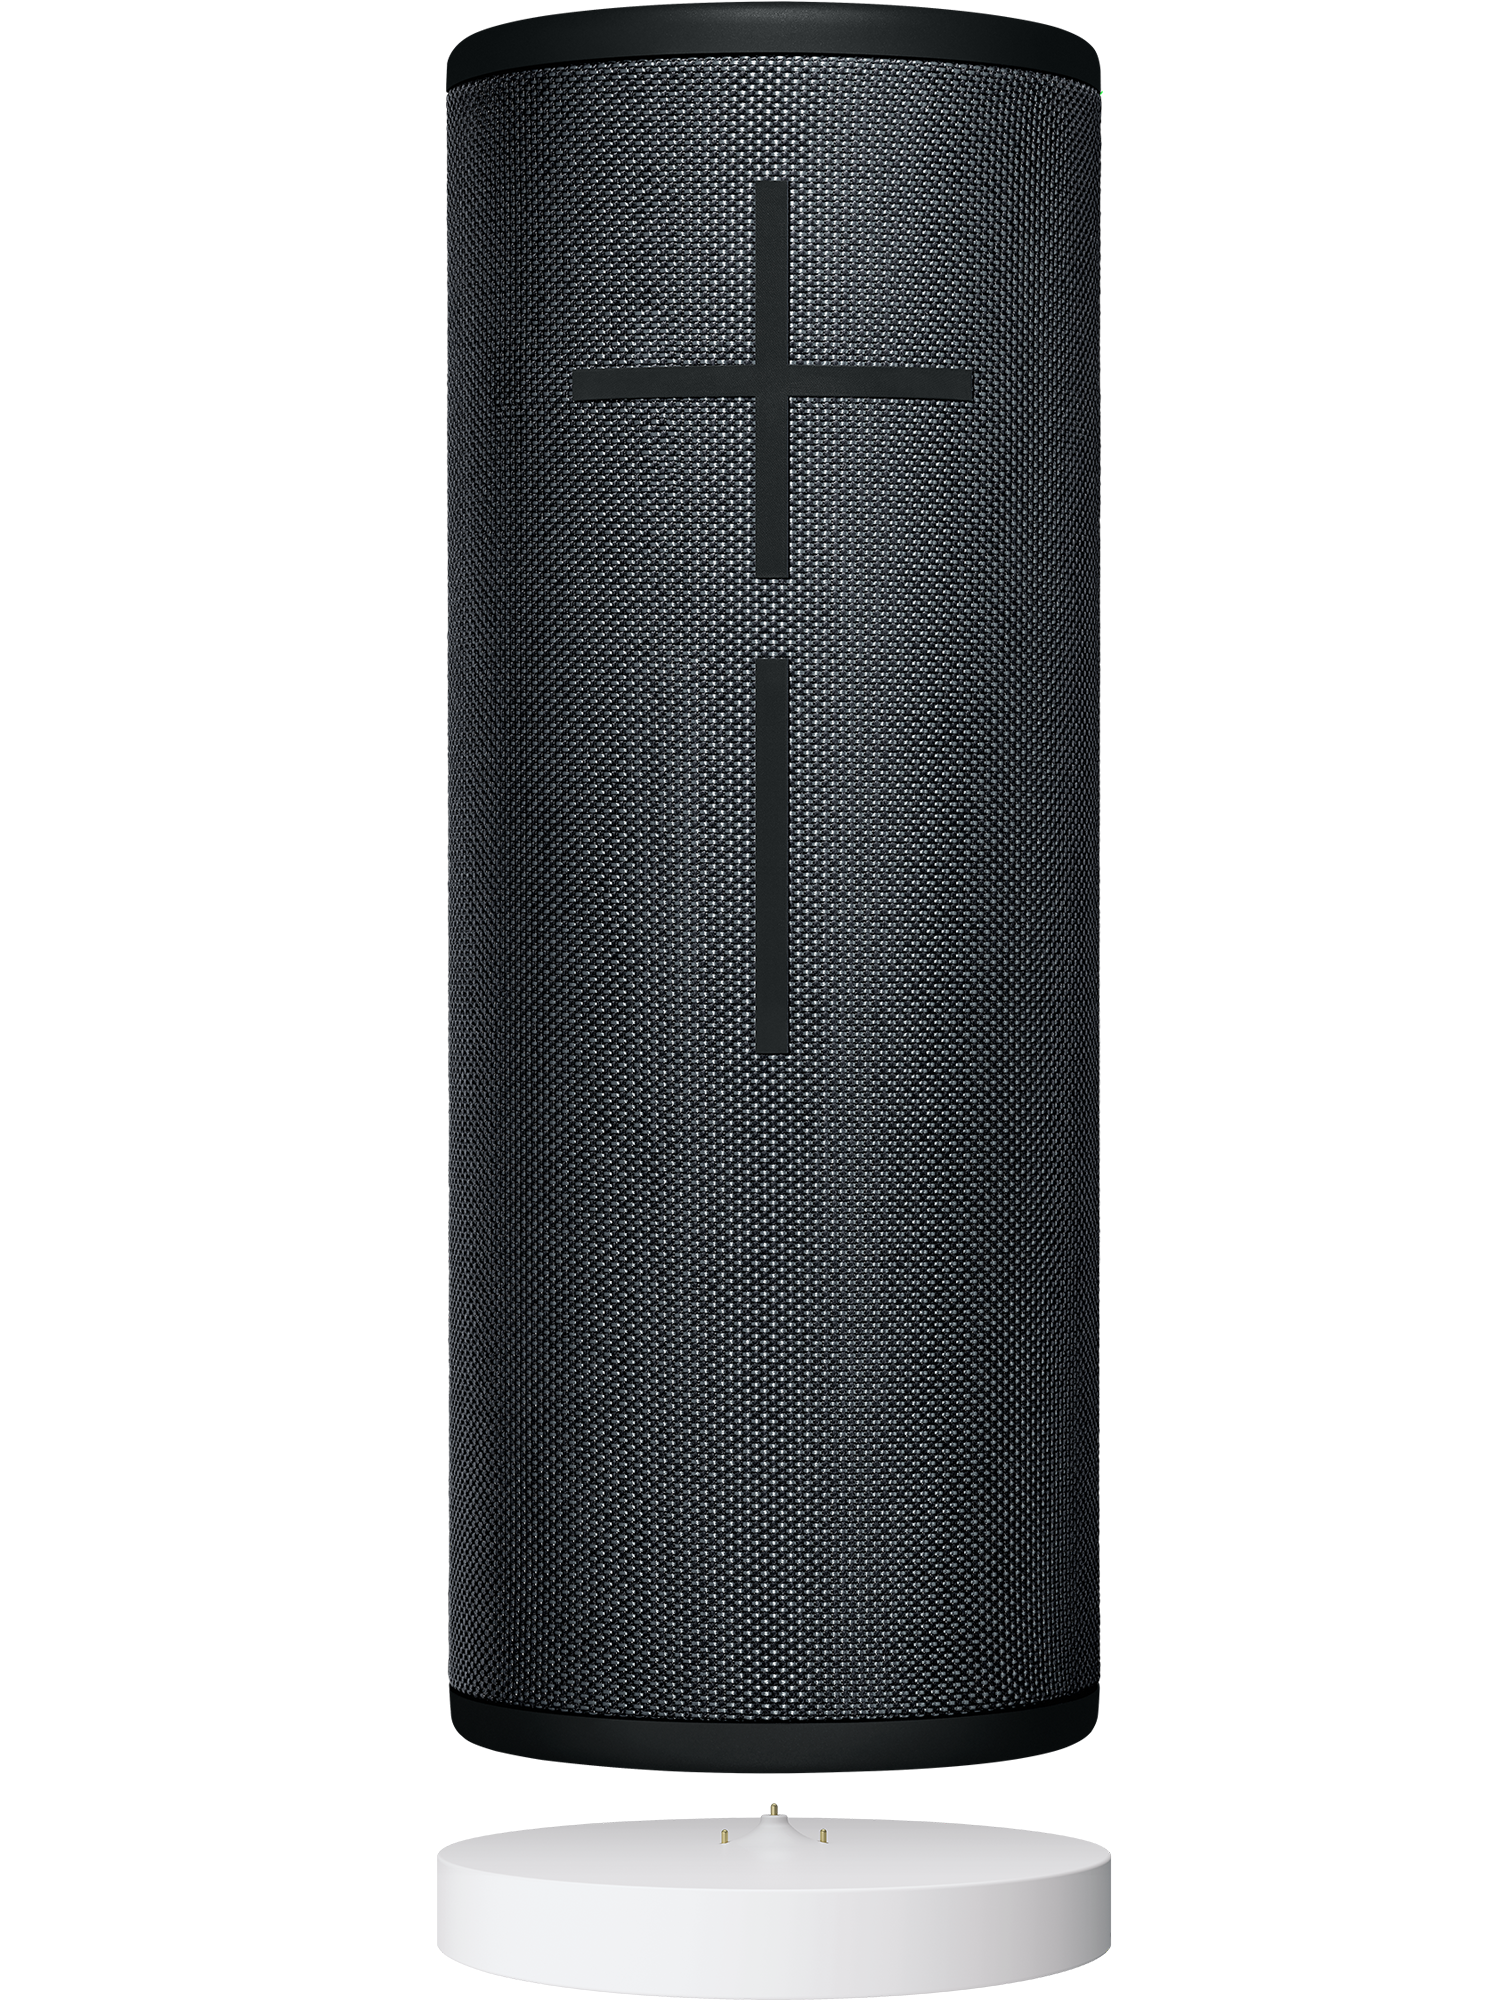 MEGABOOM 3 Bluetooth Speaker | Ultimate 